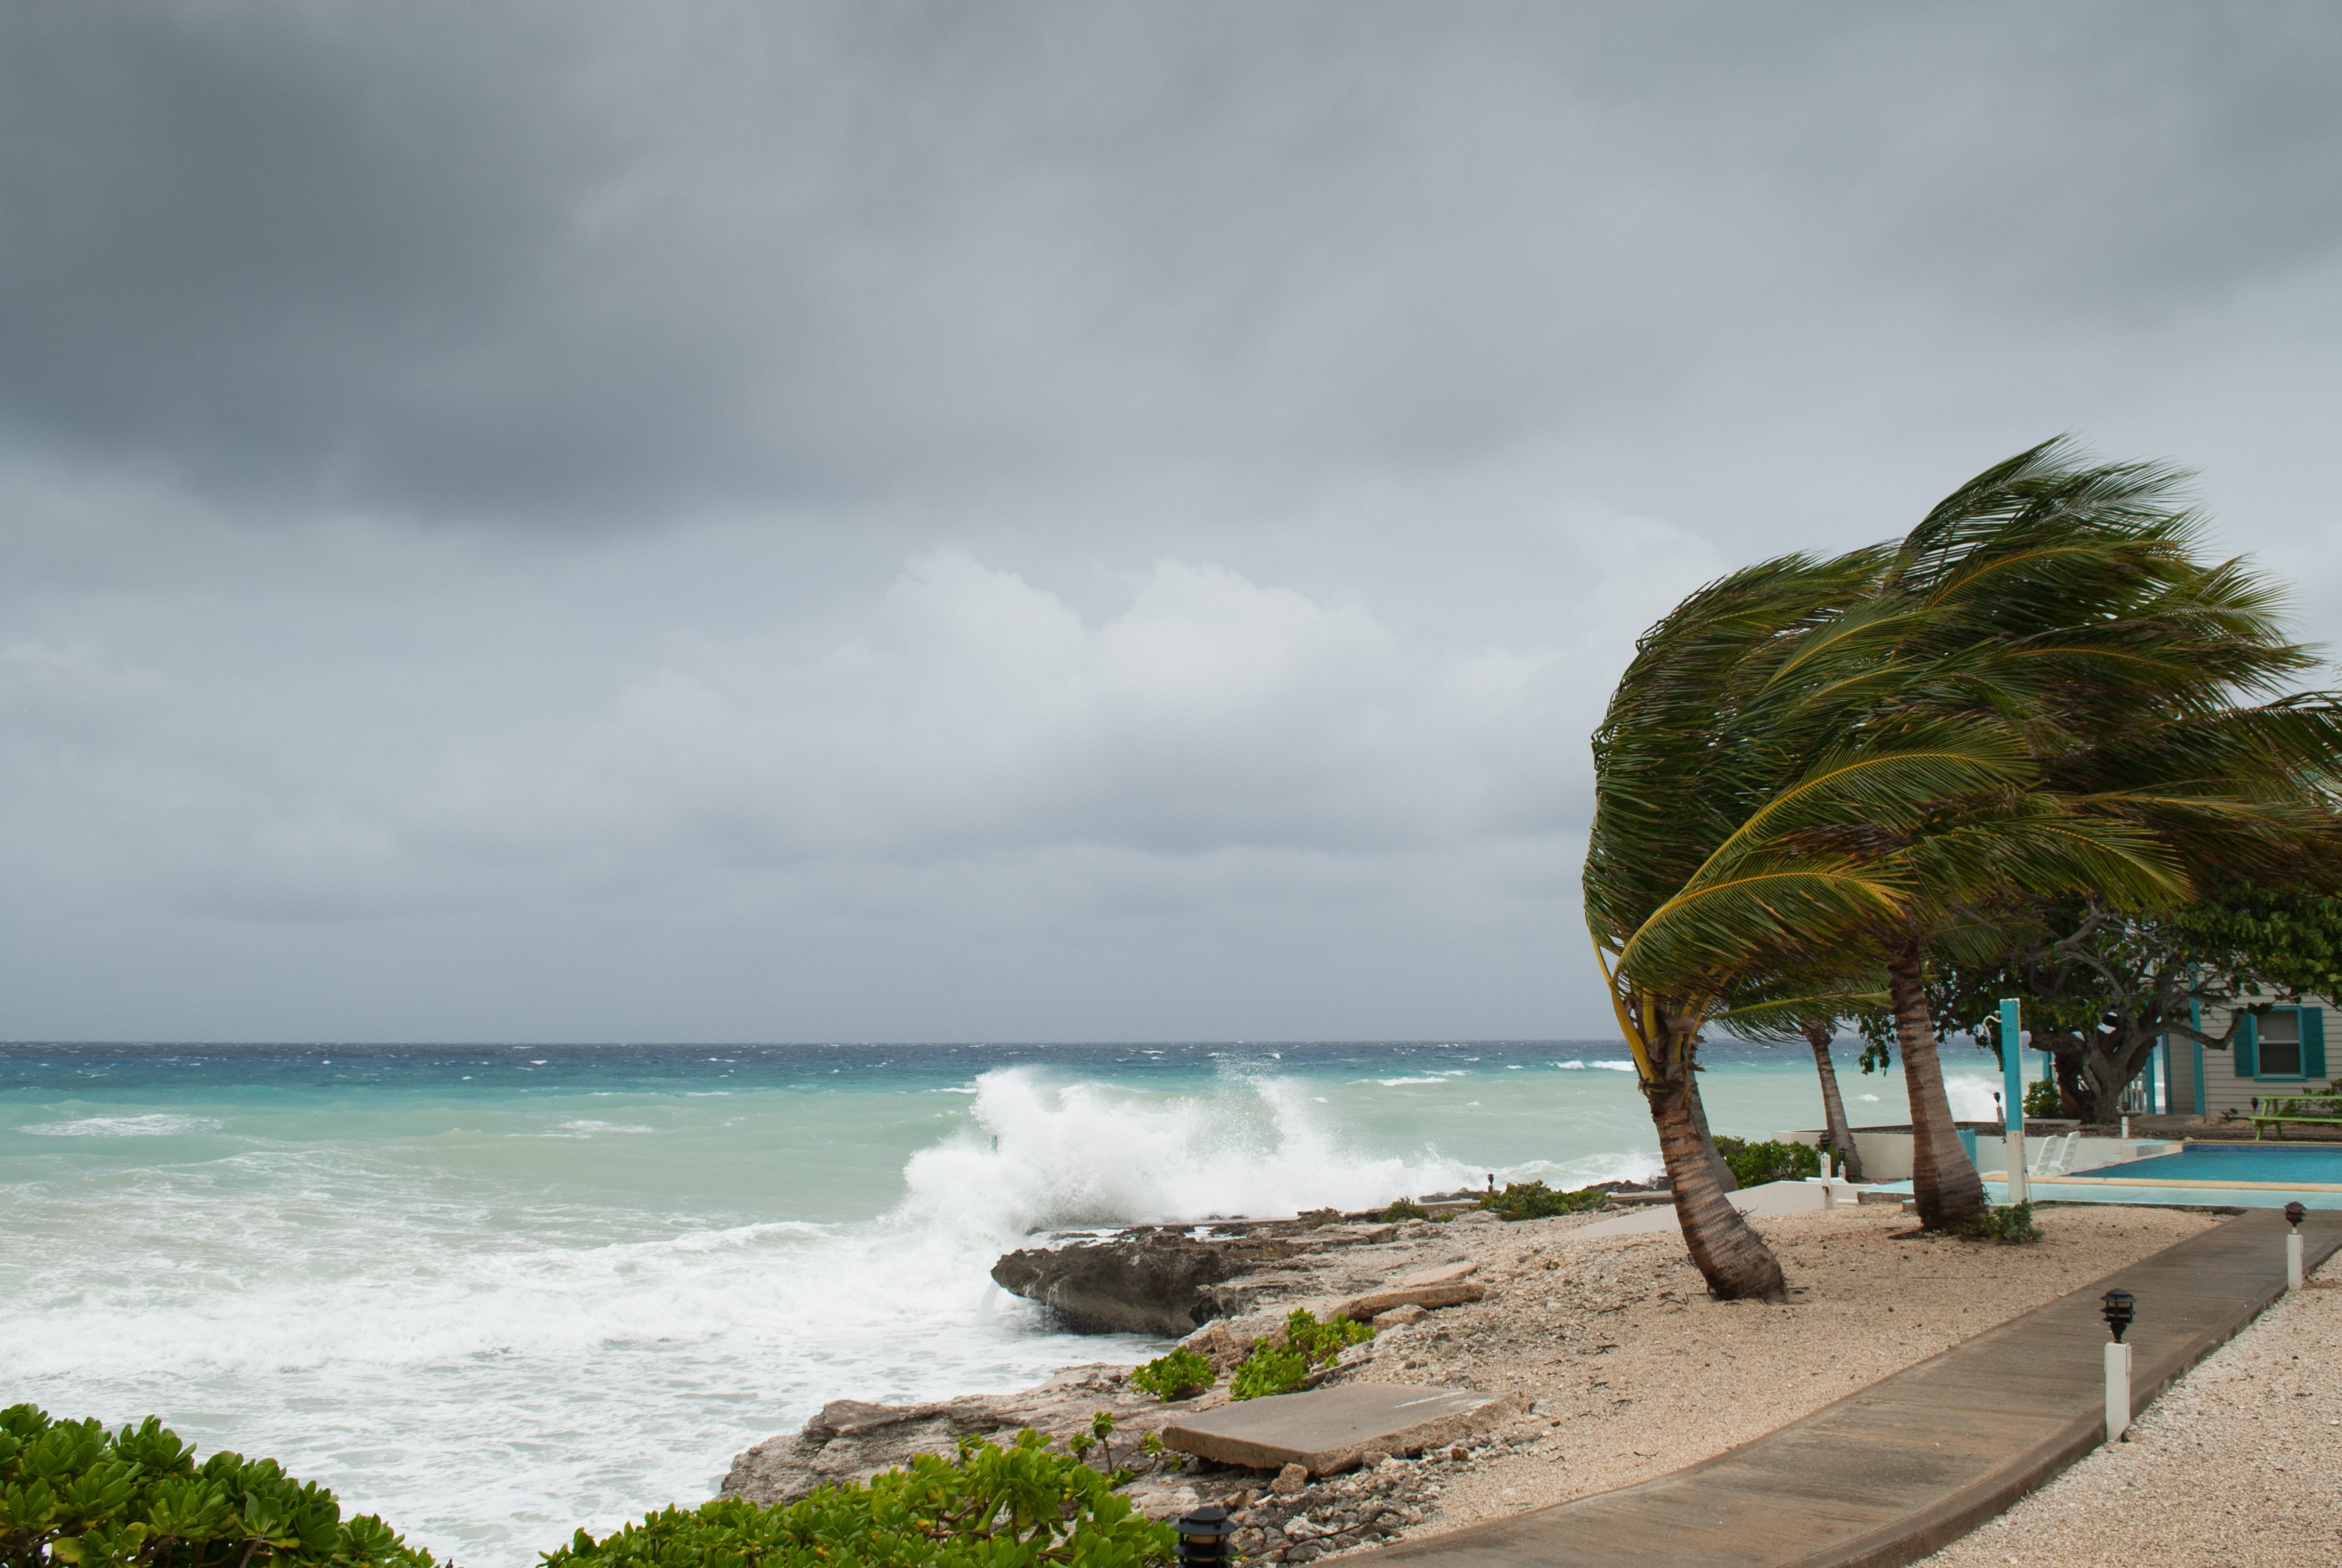 A windy beach. | Photo: Shutterstock